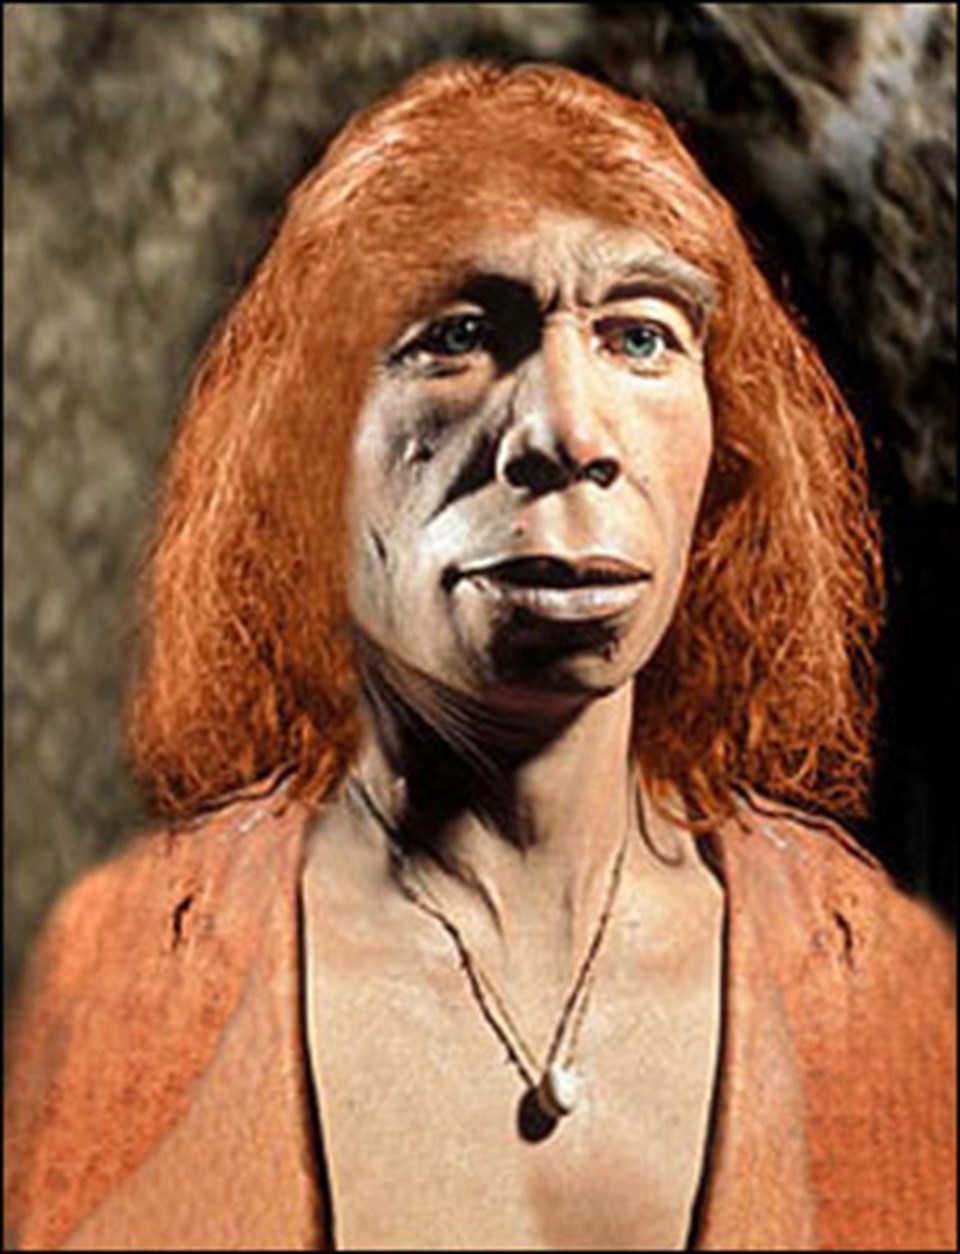 Hepimiz (biraz) Neandertaliz - 2